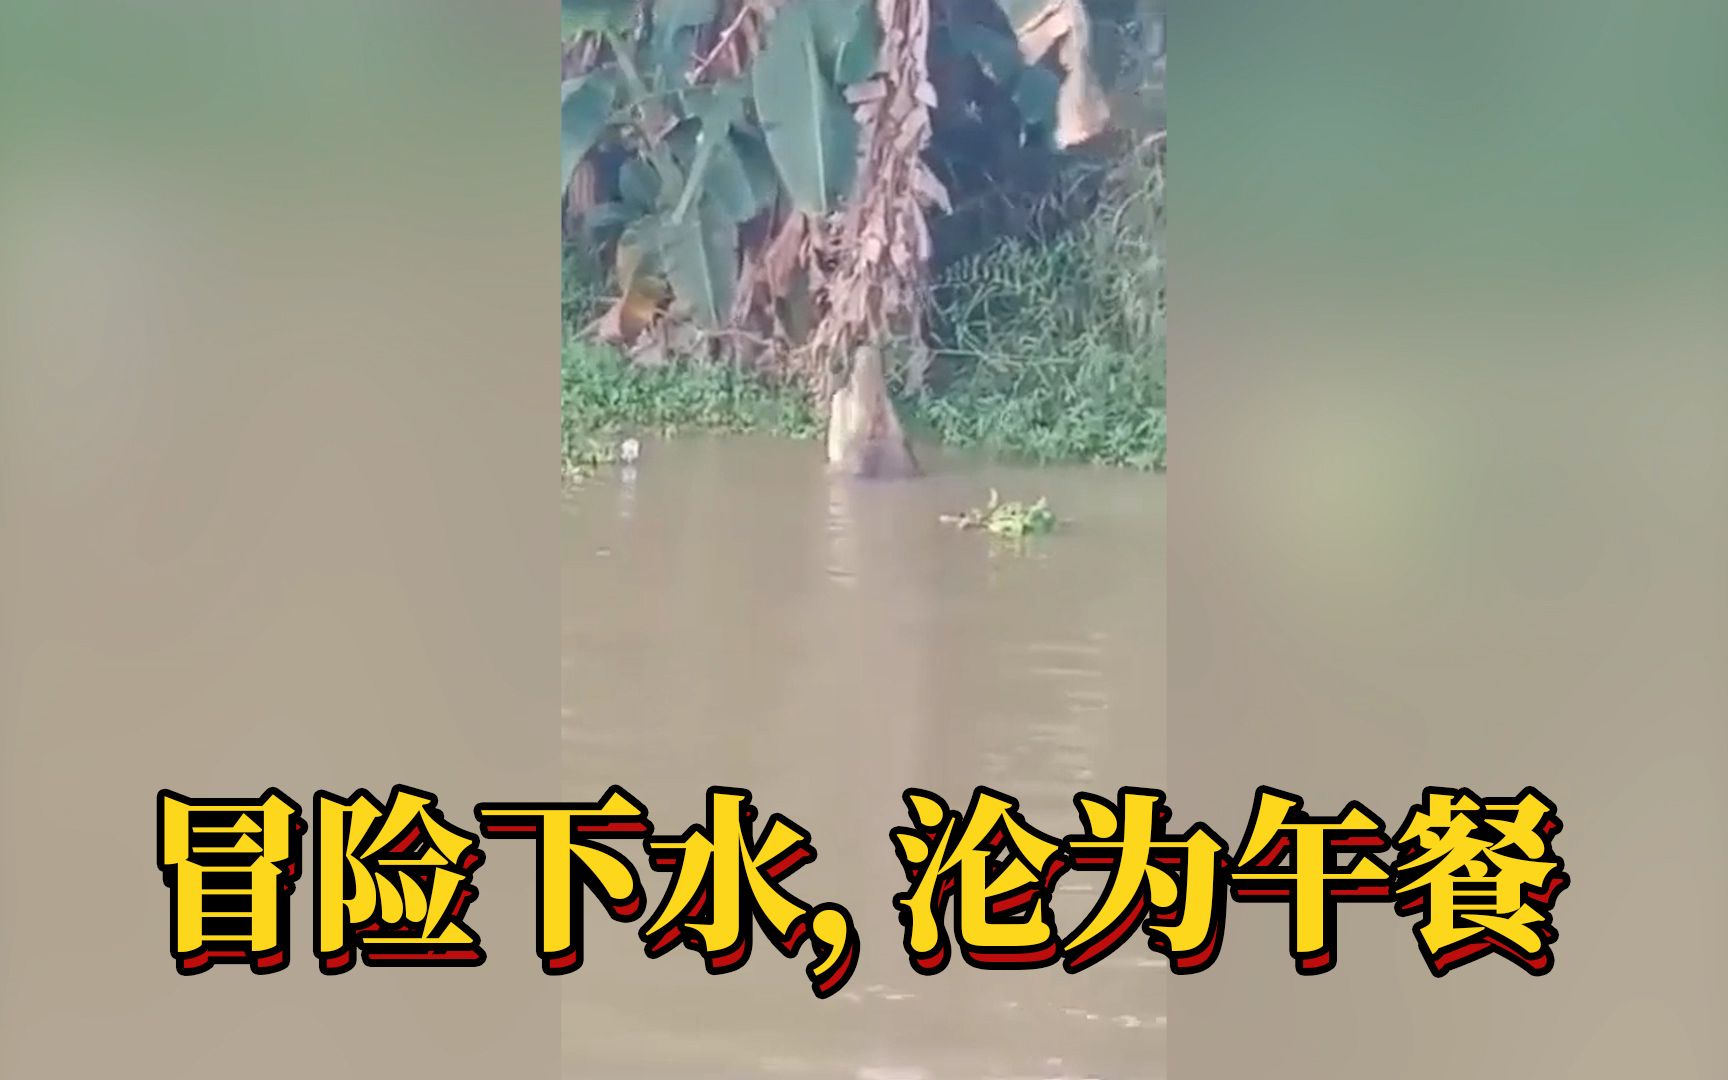 死神来了（161）：男子冒险下水，被发现时已经被鳄鱼吞下，消失在镜头中...